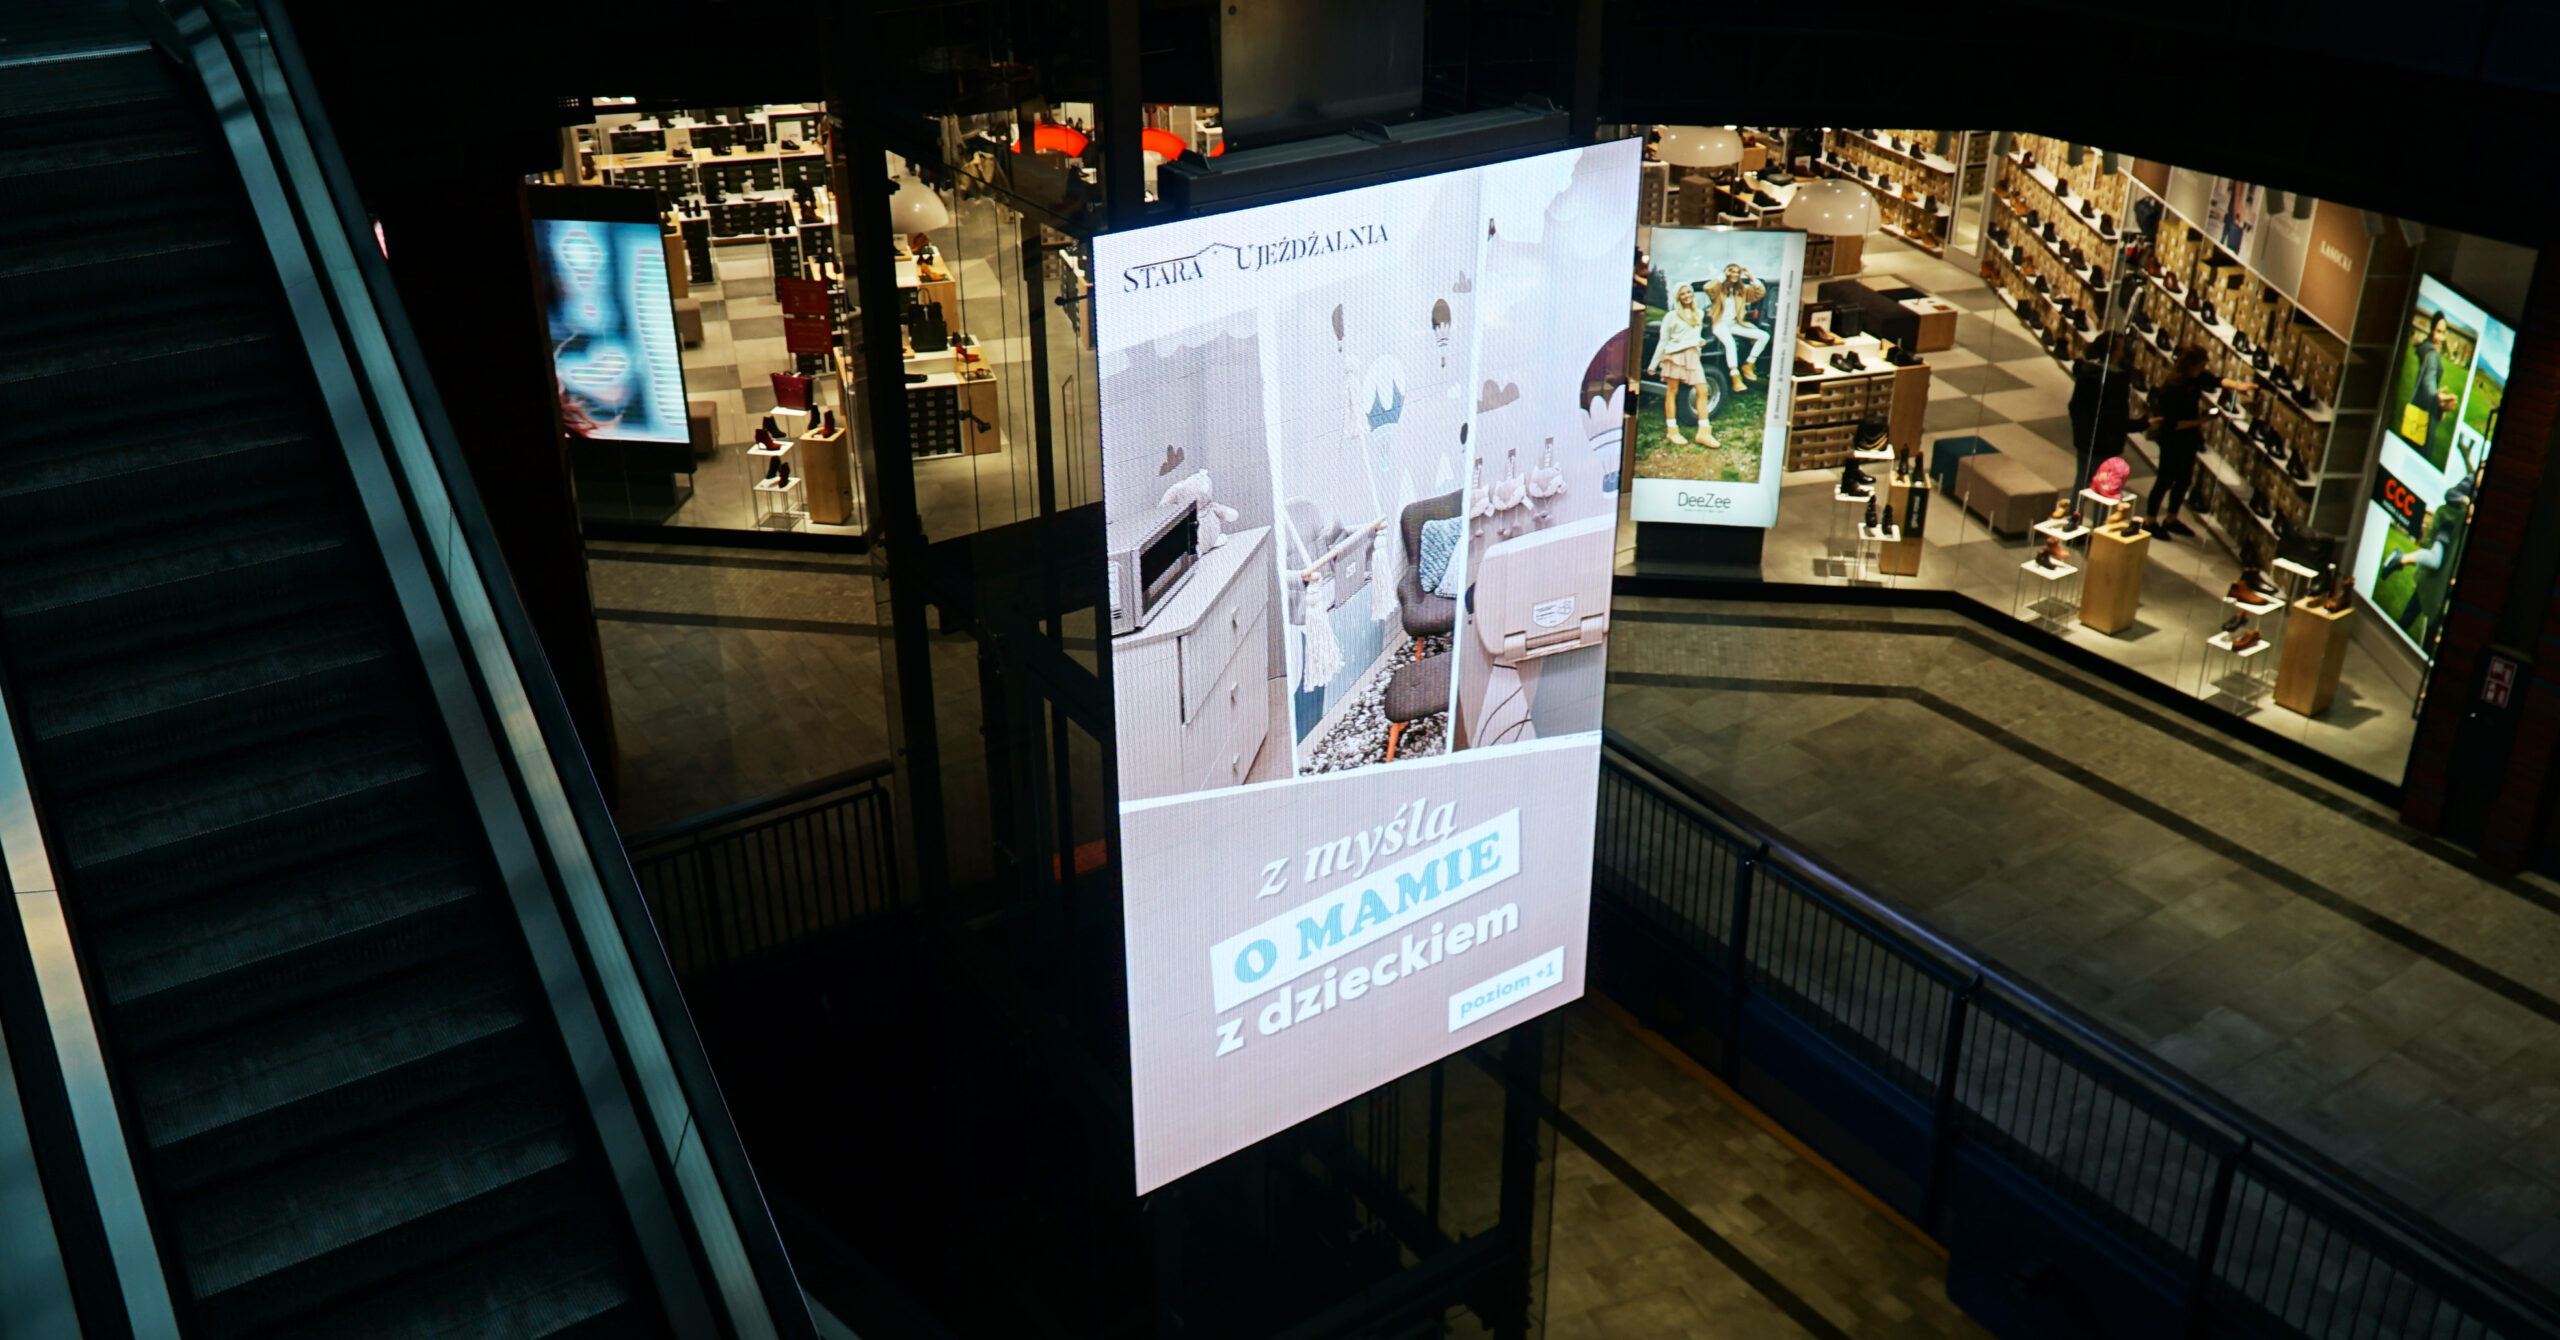 Transparenty ekran LedLIGHT umieszczony na przeszklonej windzie we wnętrzu Galerii Stara Ujeżdżalnia w Jarosławiu